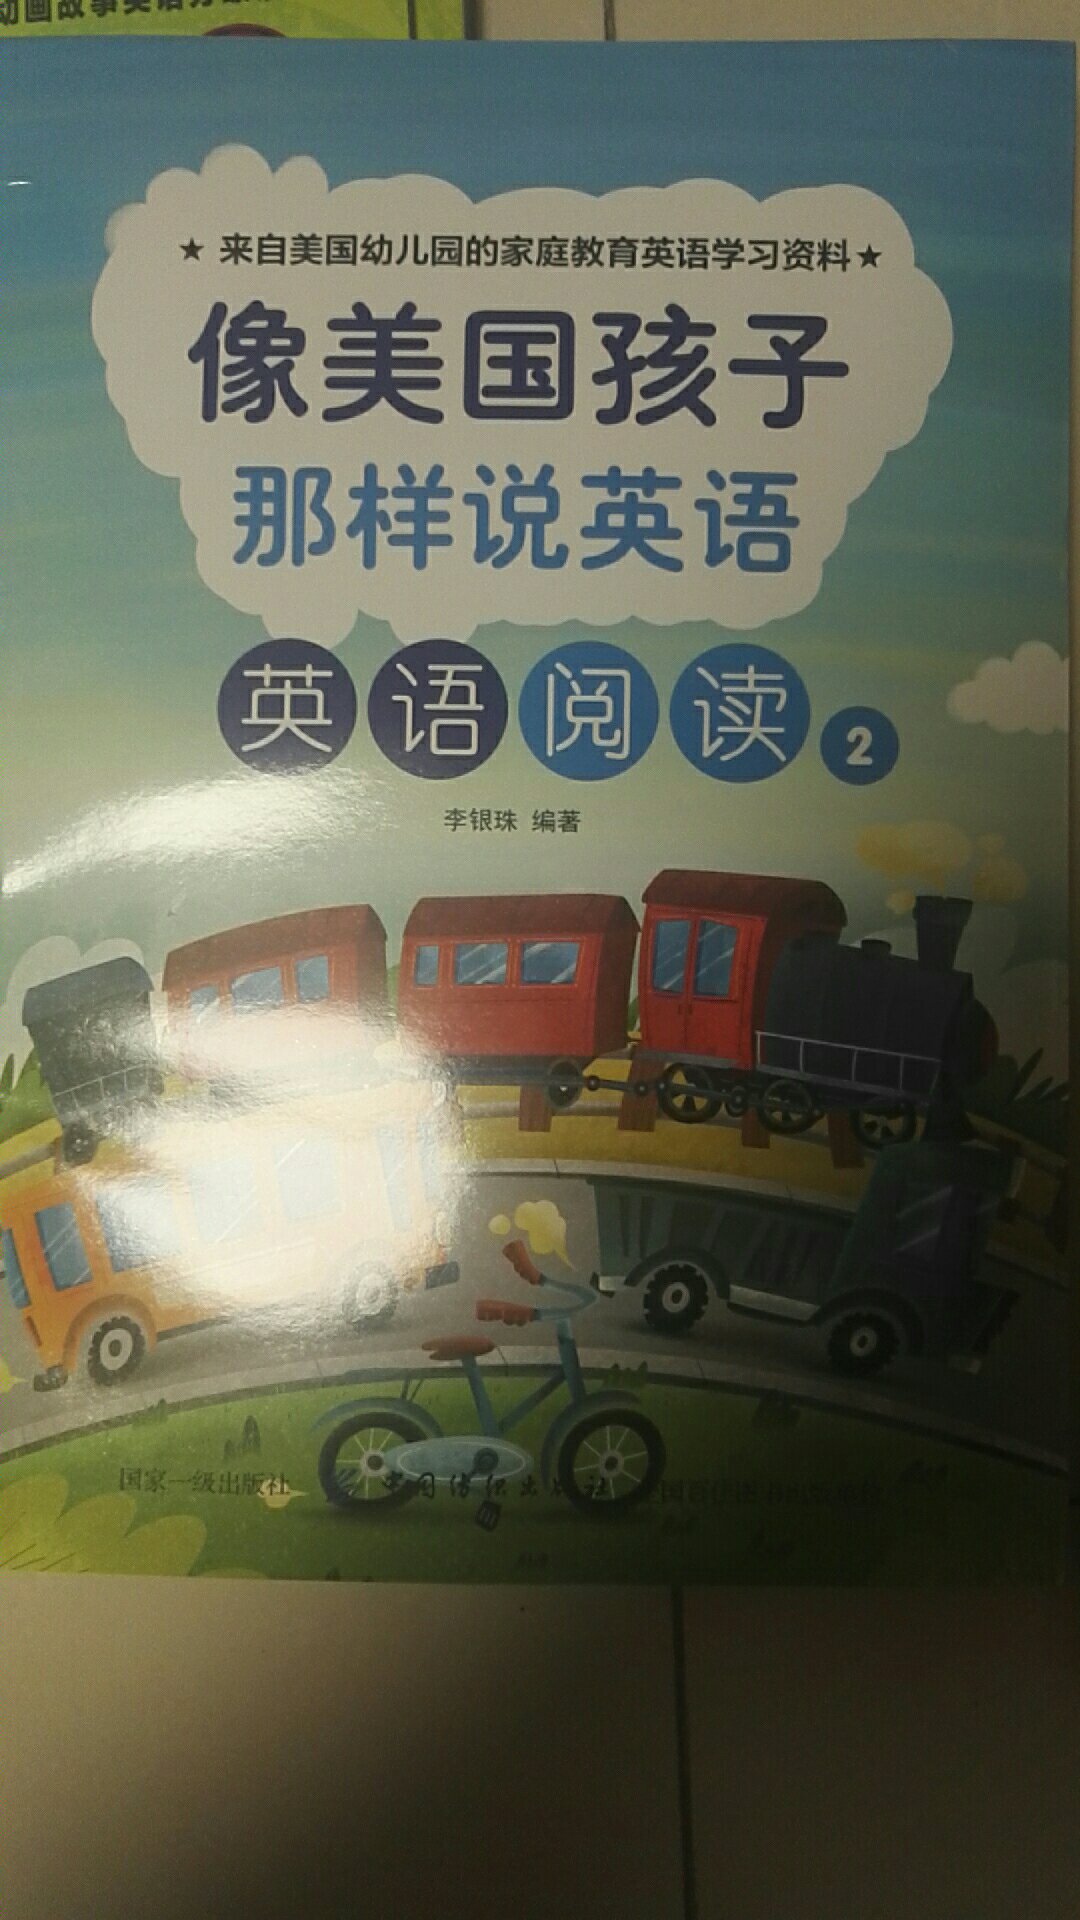 很难相信这书是幼儿园孩子去读的，没有语言环境的小孩，读起来比较吃力，图书质量很好